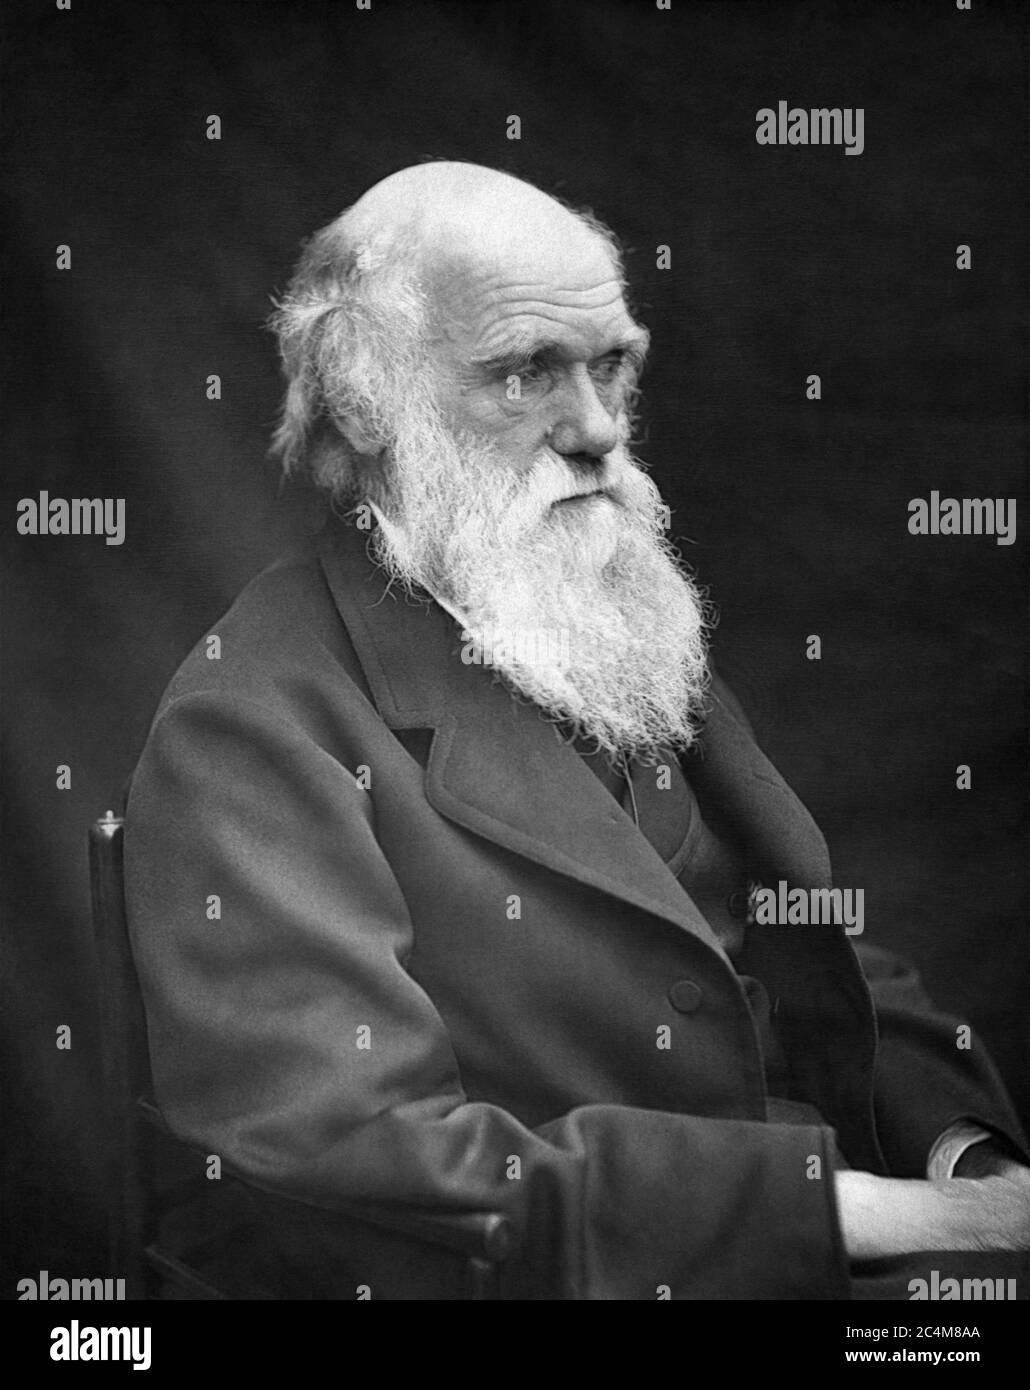 Charles Robert Darwin, evolucionista y autor del origen de las especies, en una fotografía de 1878 de Leonard Darwin, hijo de Charles Darwin. Foto de stock